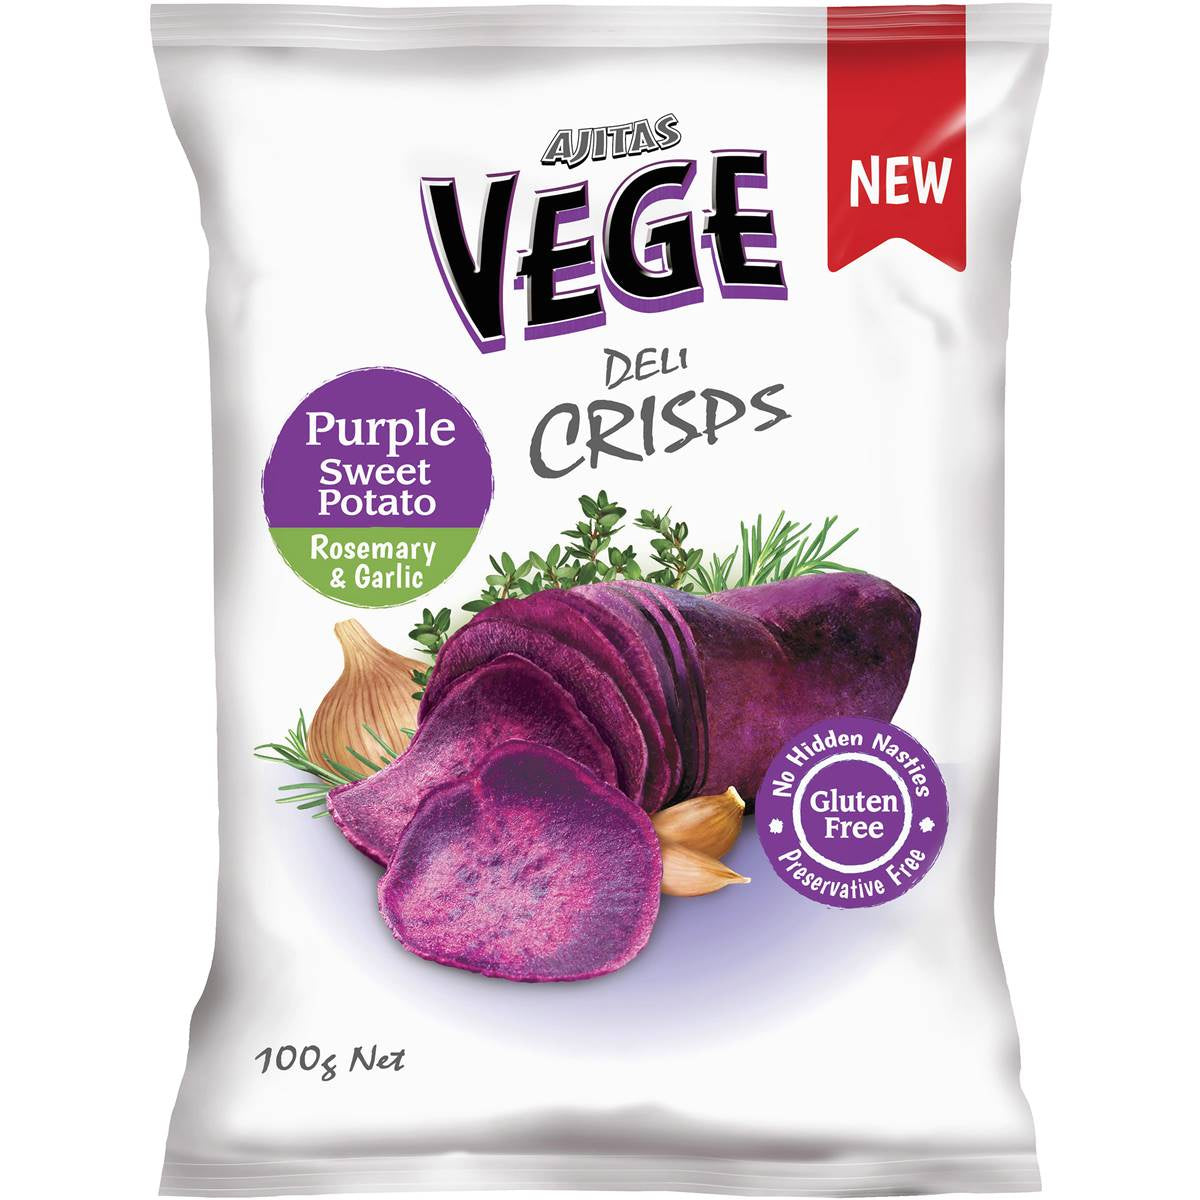 Vege Chips Deli Crisp Purple Sweet Potato Gluten Free 100g